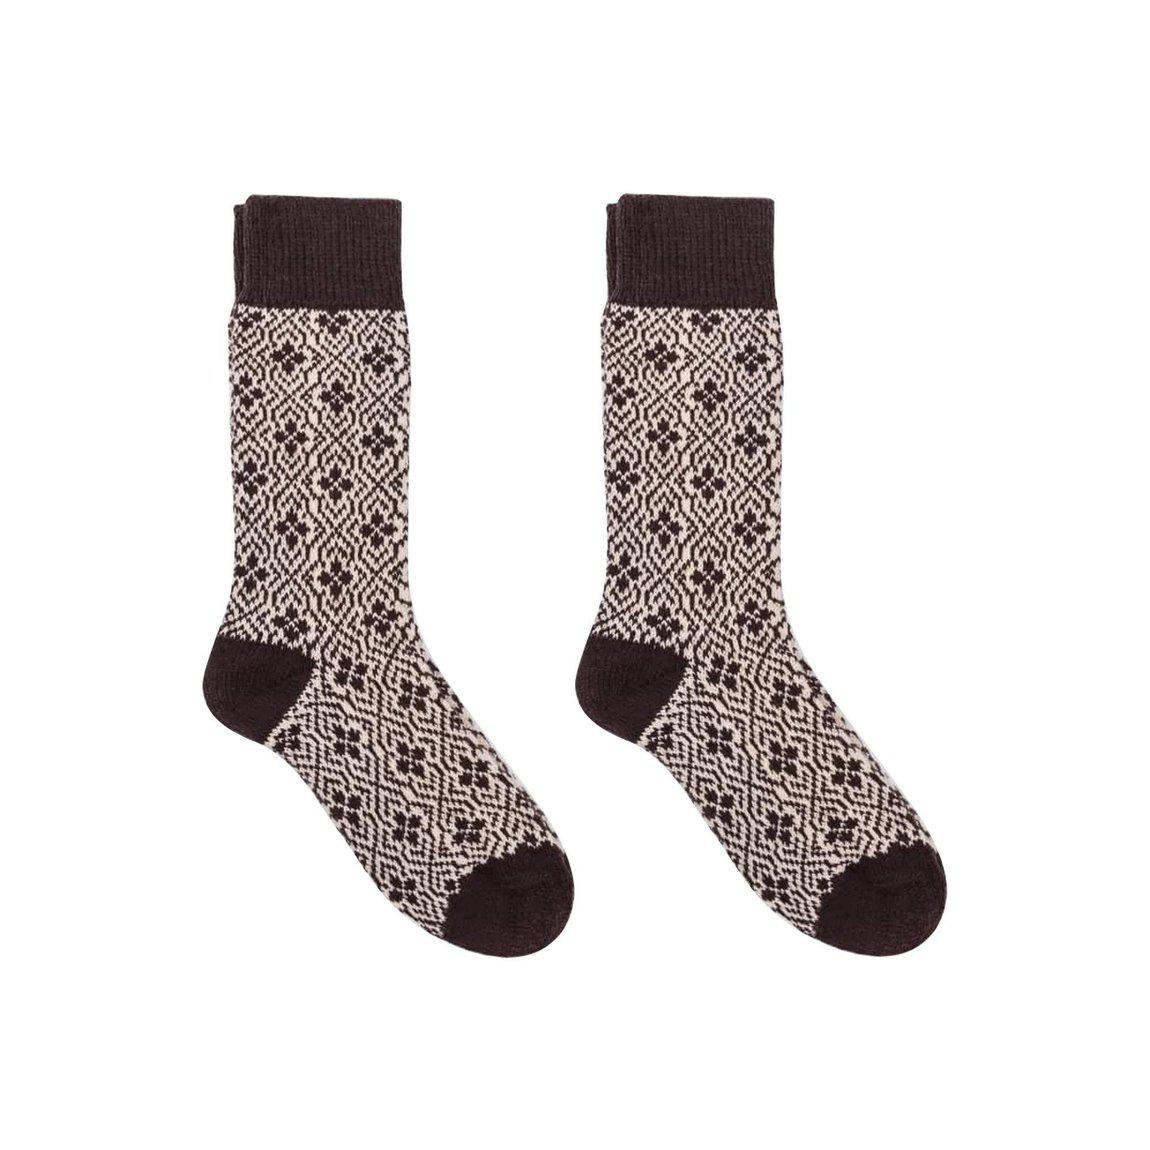 Nordic Socks Merino Wool in PERFORM™ (Ulf - Coffee) - Unisex - Nordic Wools